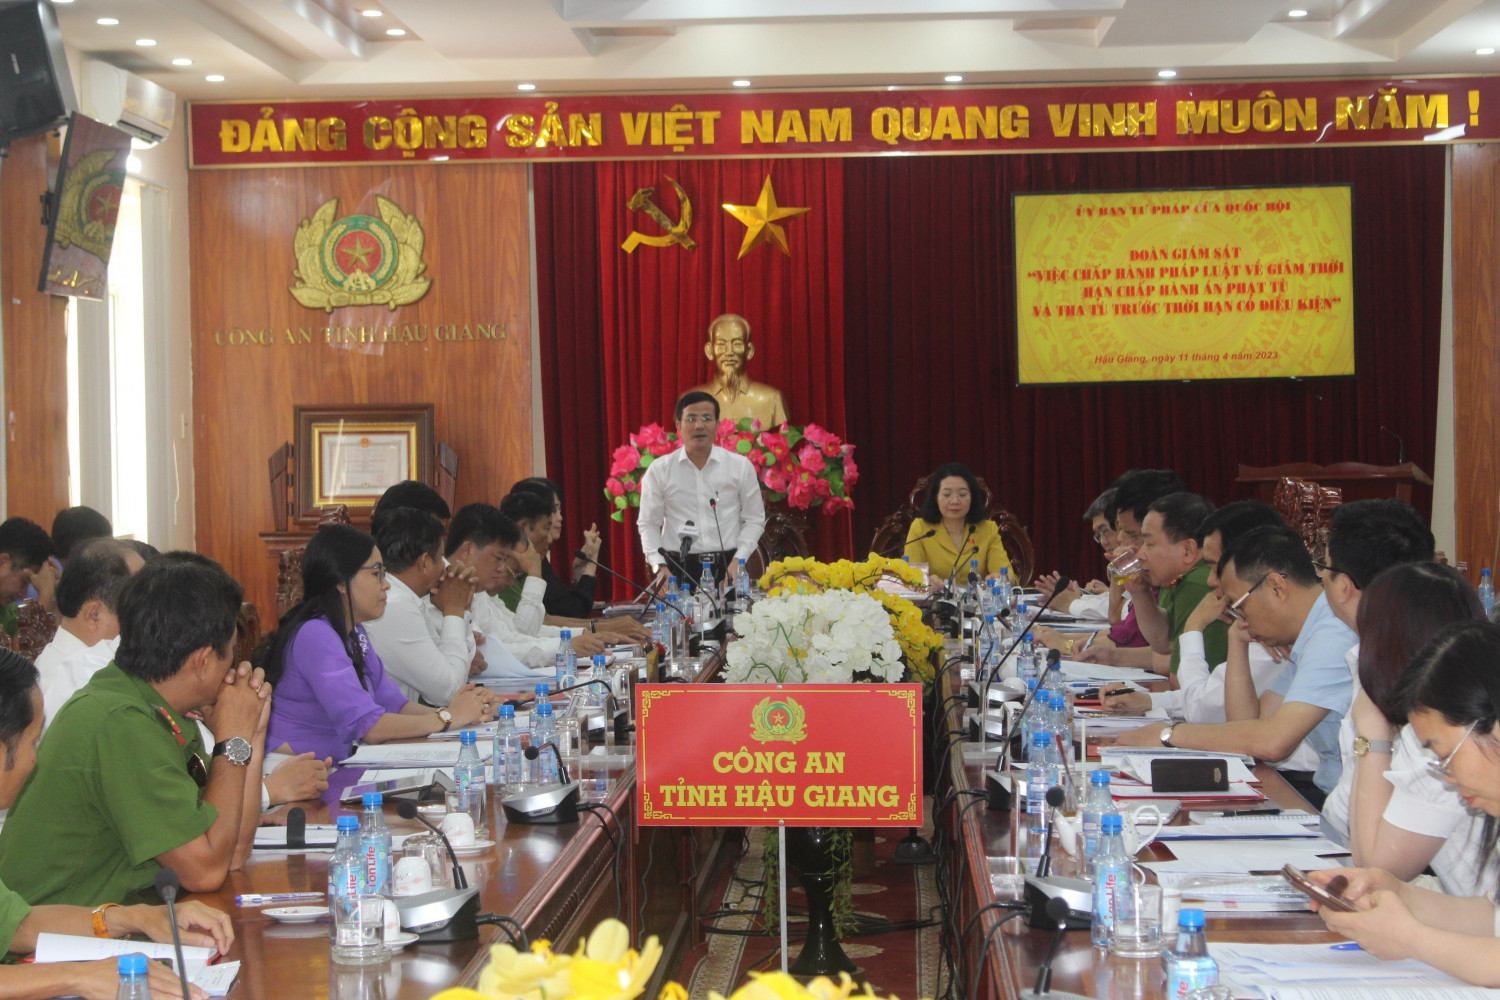 Ông Trần Văn Huyến, Phó Bí thư Thường trực Tỉnh ủy, Chủ tịch Hội đồng nhân dân tỉnh phát biểu tiếp thu tại buổi làm việc